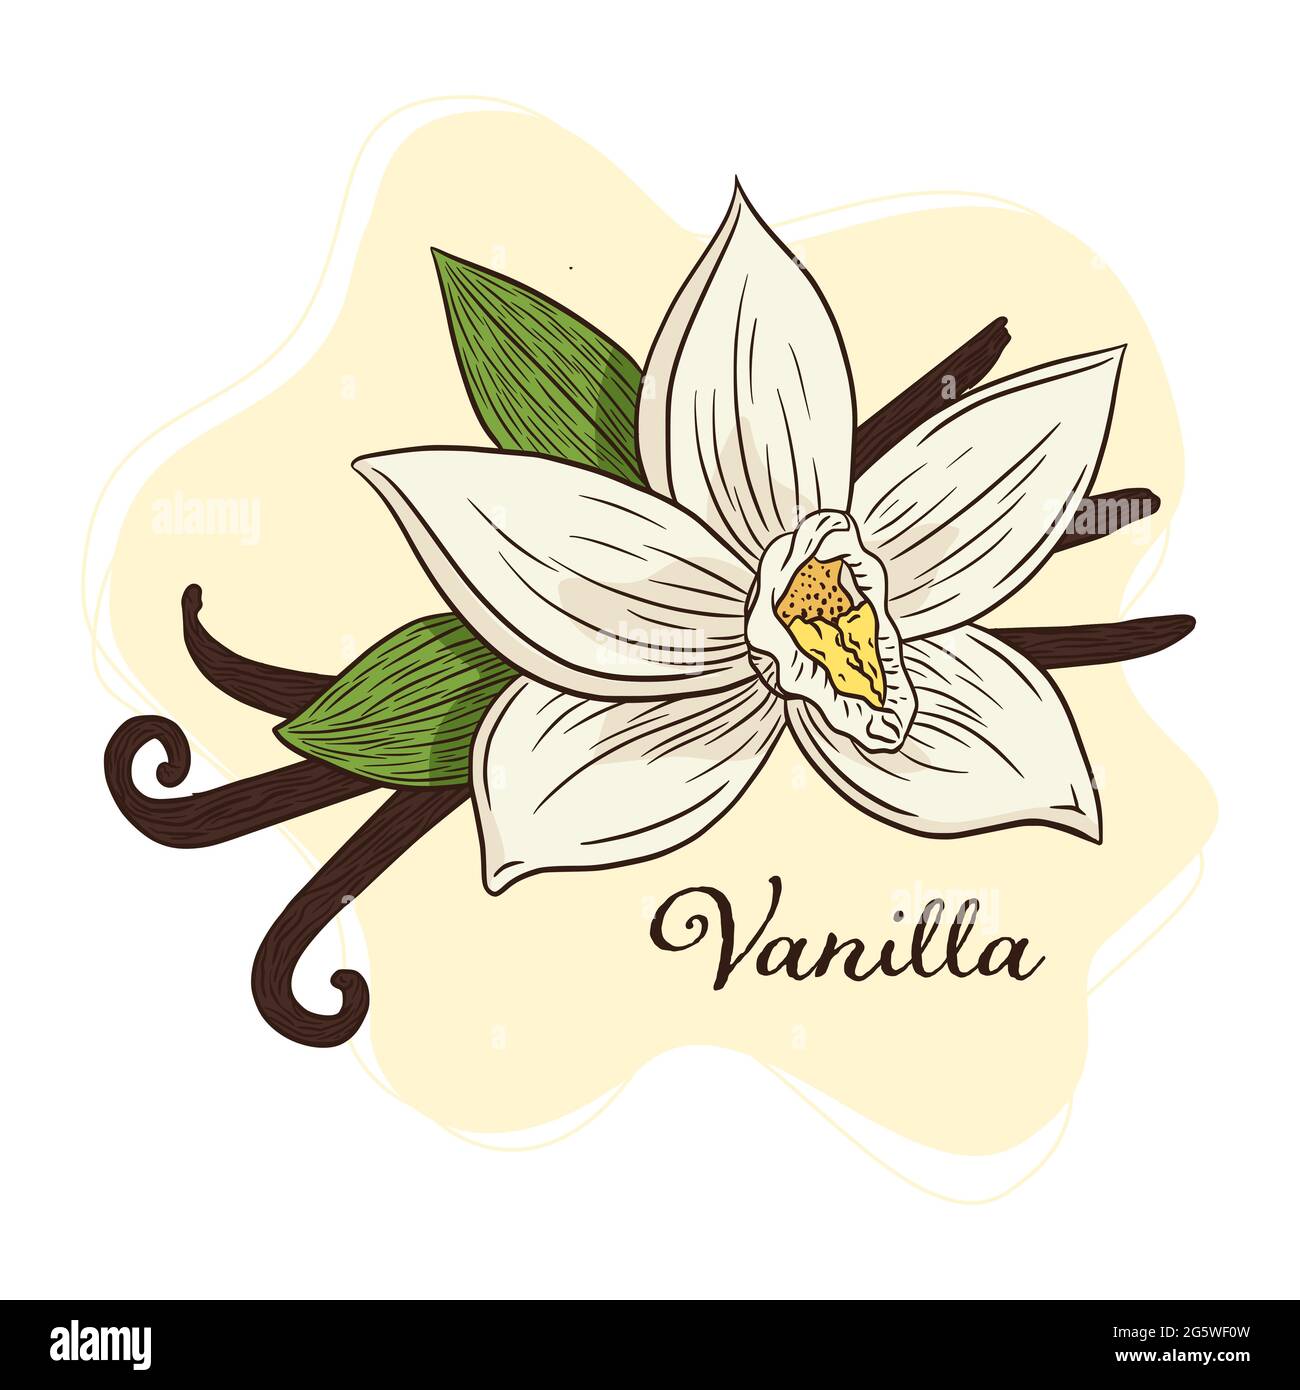 Họa tiết hoa và quả vanila được vẽ tay với những nét đậm nét mịn sẽ mang đến cho bạn cảm giác gần gũi hơn với thiên nhiên. Hãy tham quan những tác phẩm đẹp đến ngỡ ngàng này và tìm hiểu tất cả về nét vẽ thật tài tình này. 